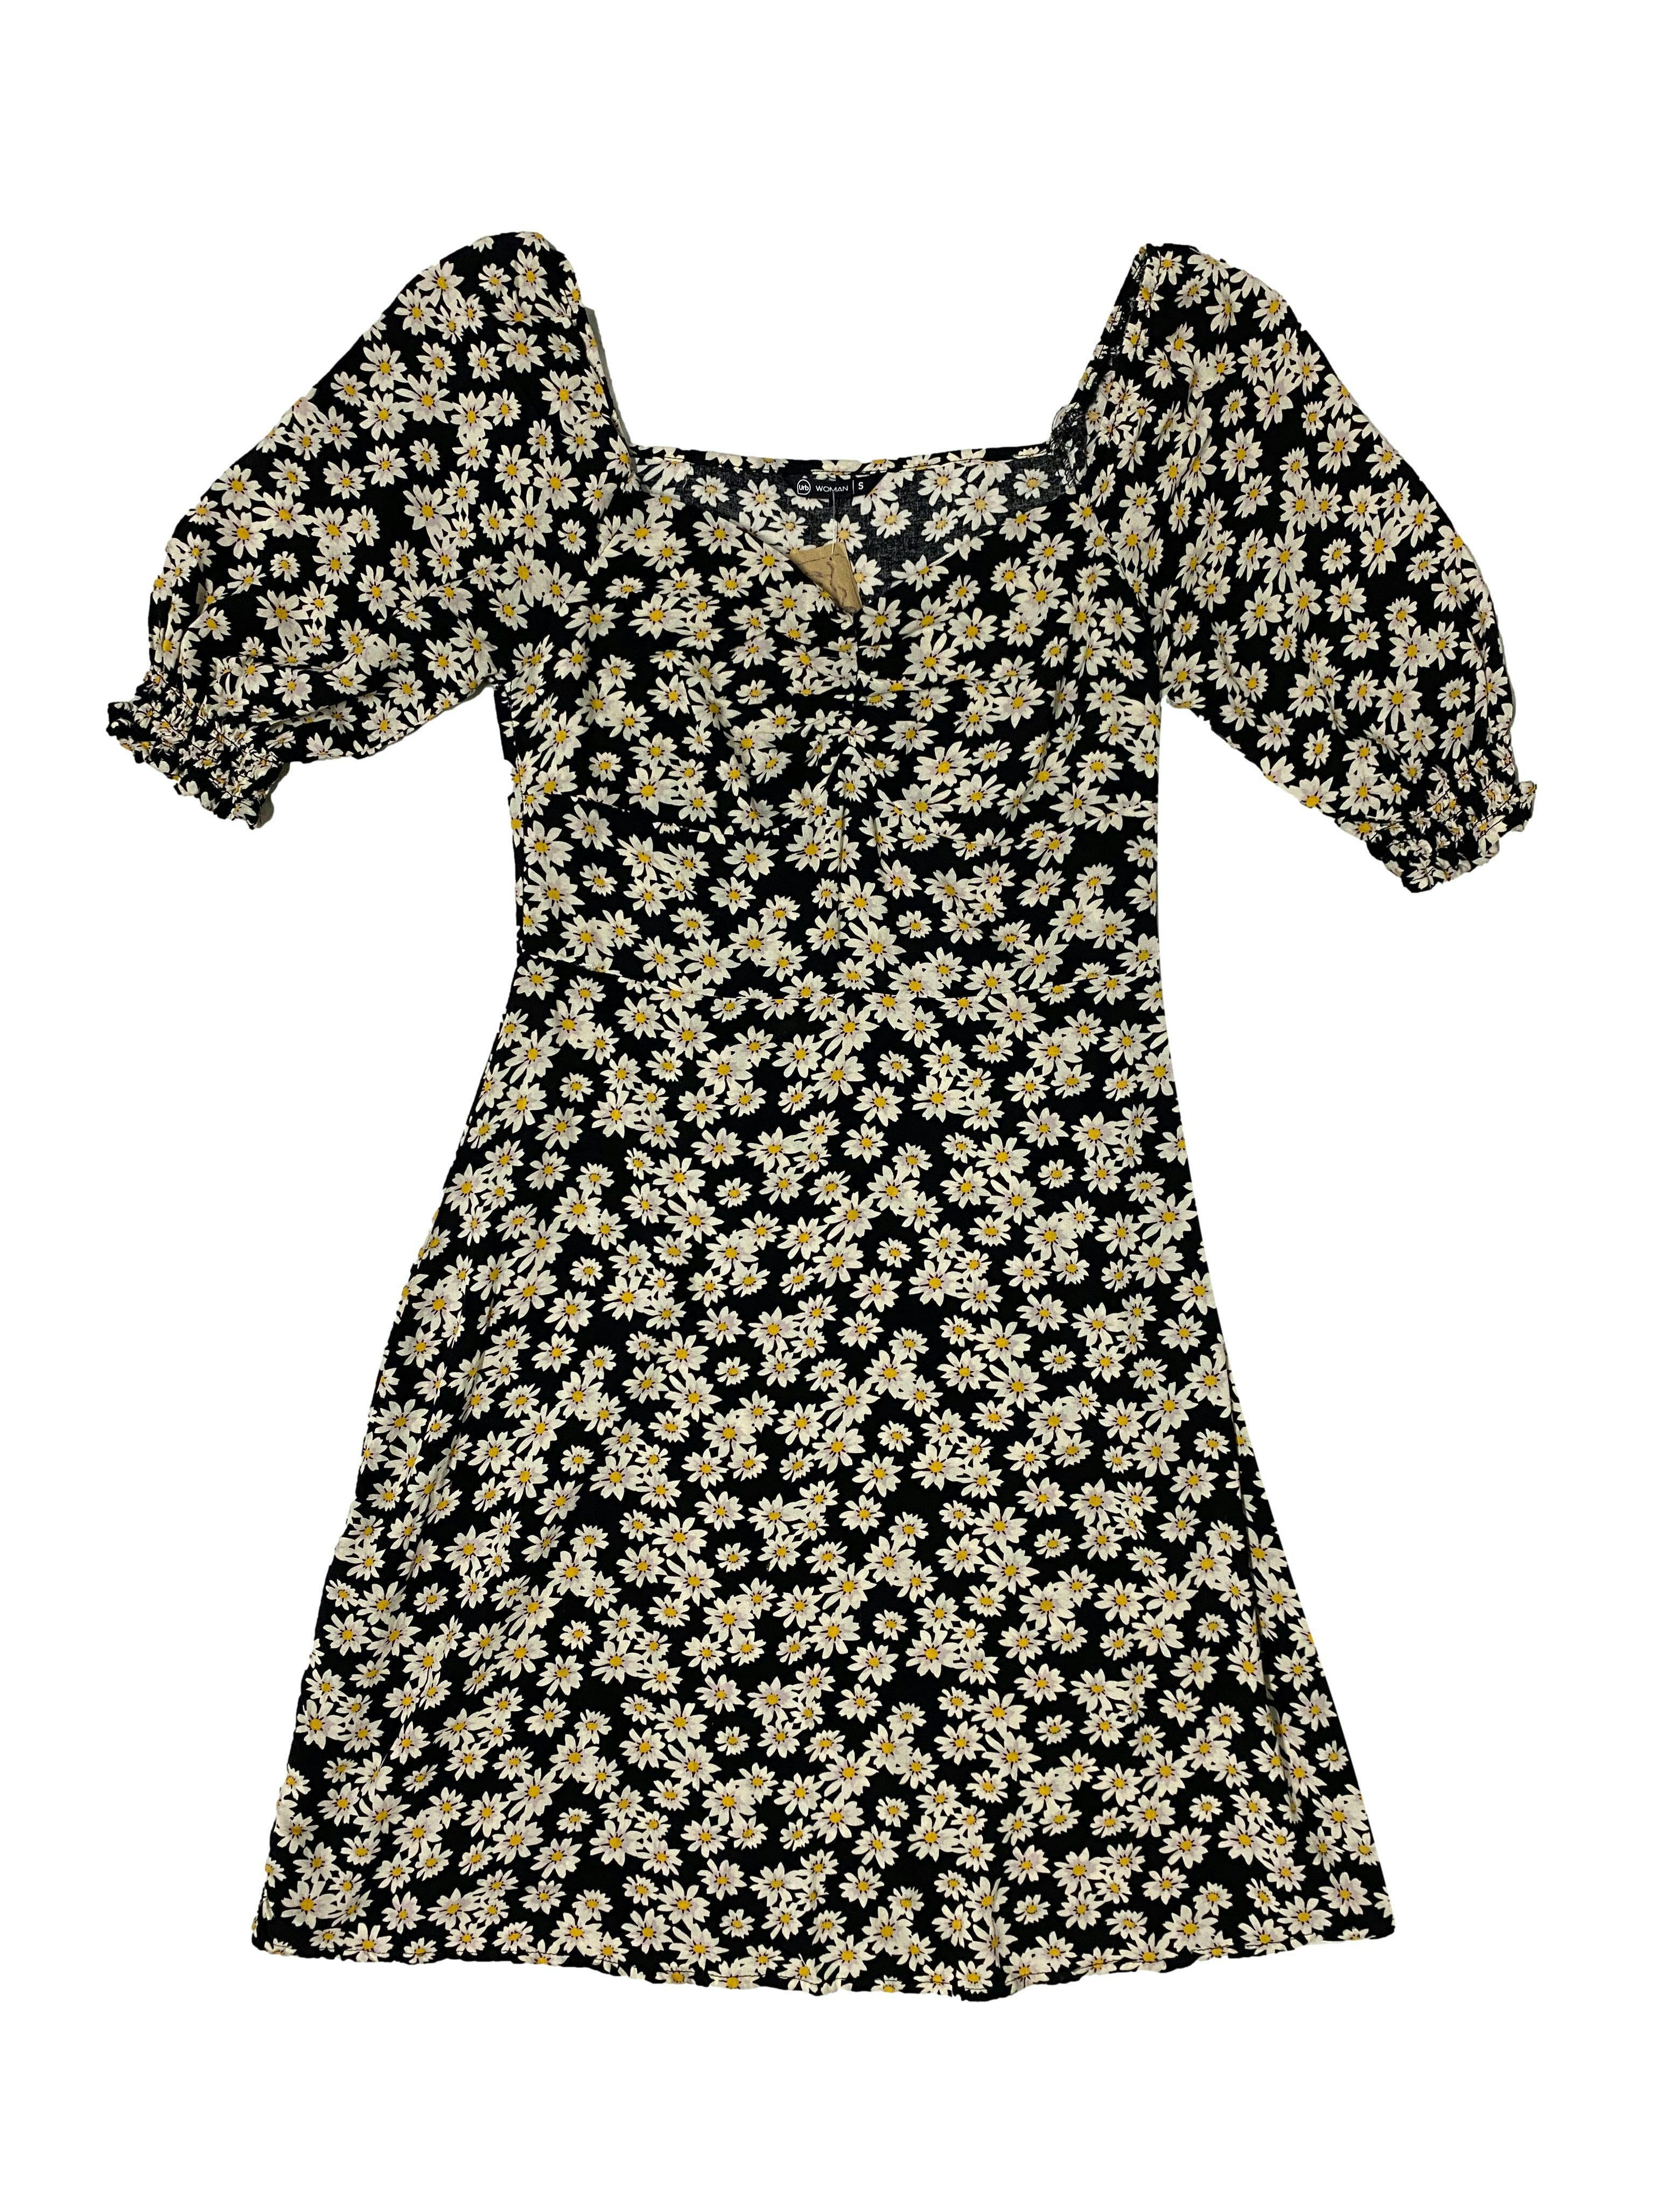 Vestido Urb negro con diseño de flores margaritas blancas, zipper lateral, off-shoulder con elástico en las mangas, mangas abullonadas. Busto: 80cm, cintura: 70cm, largo: 80cm  